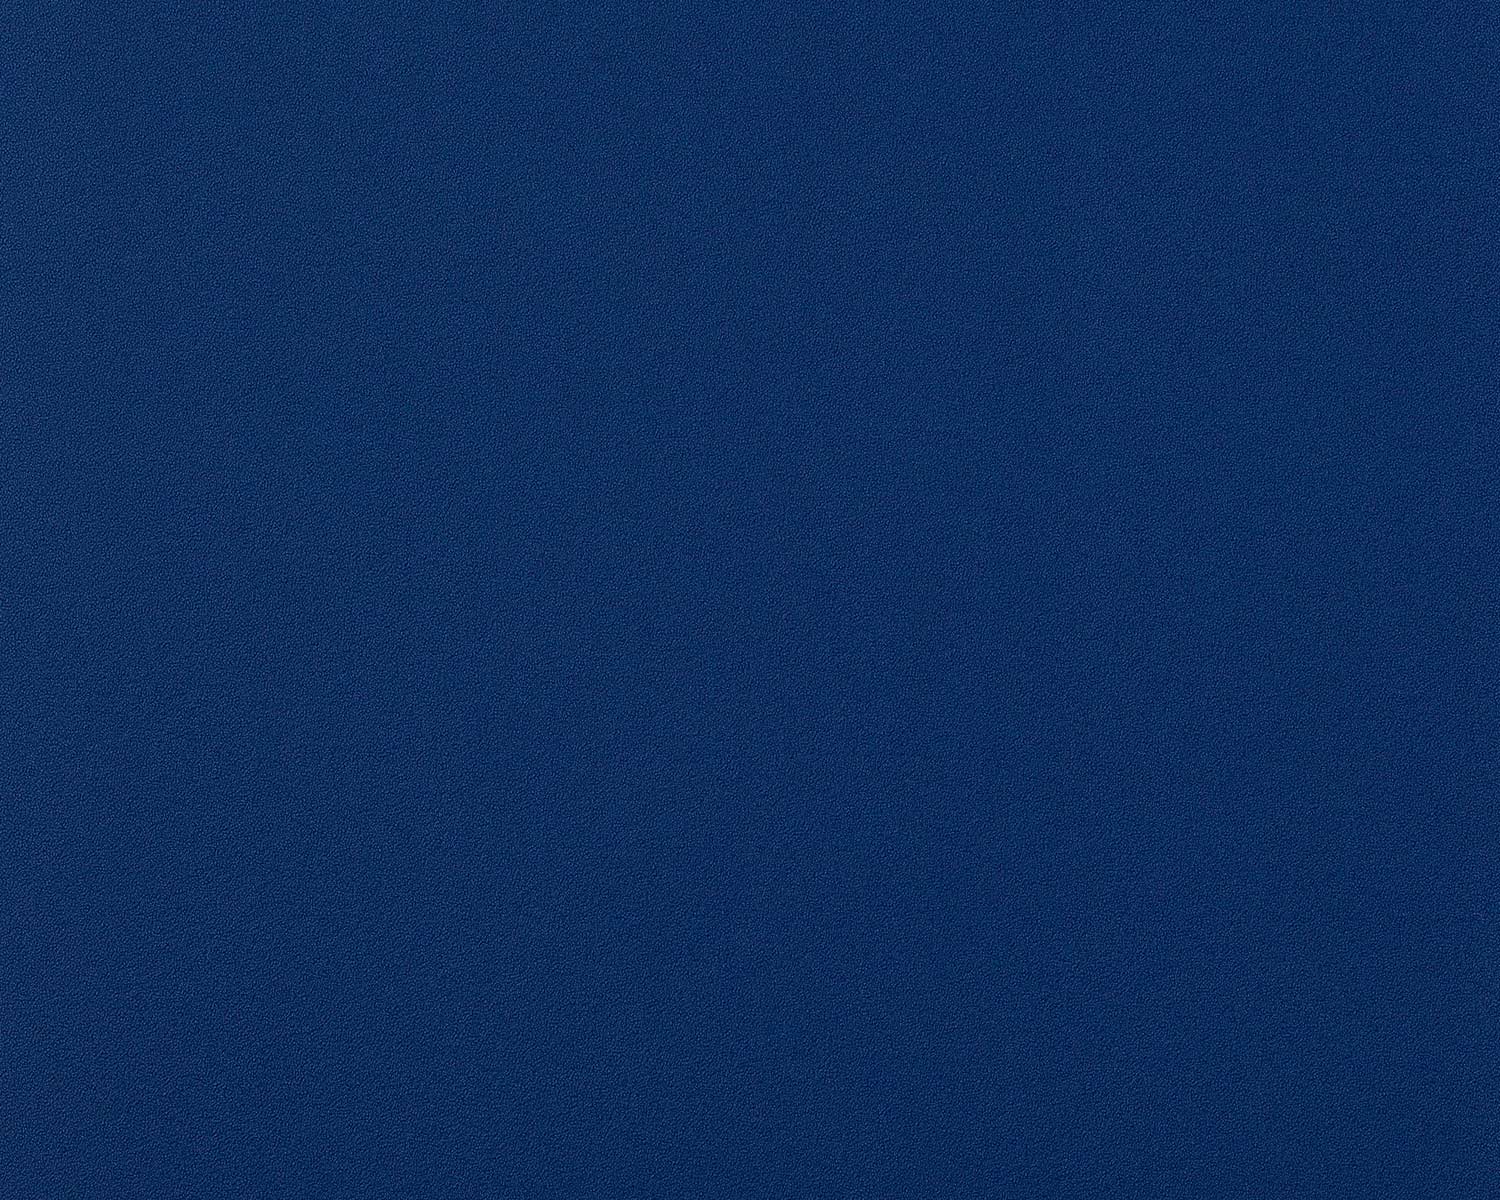 50+] Blue Plain Wallpaper - WallpaperSafari